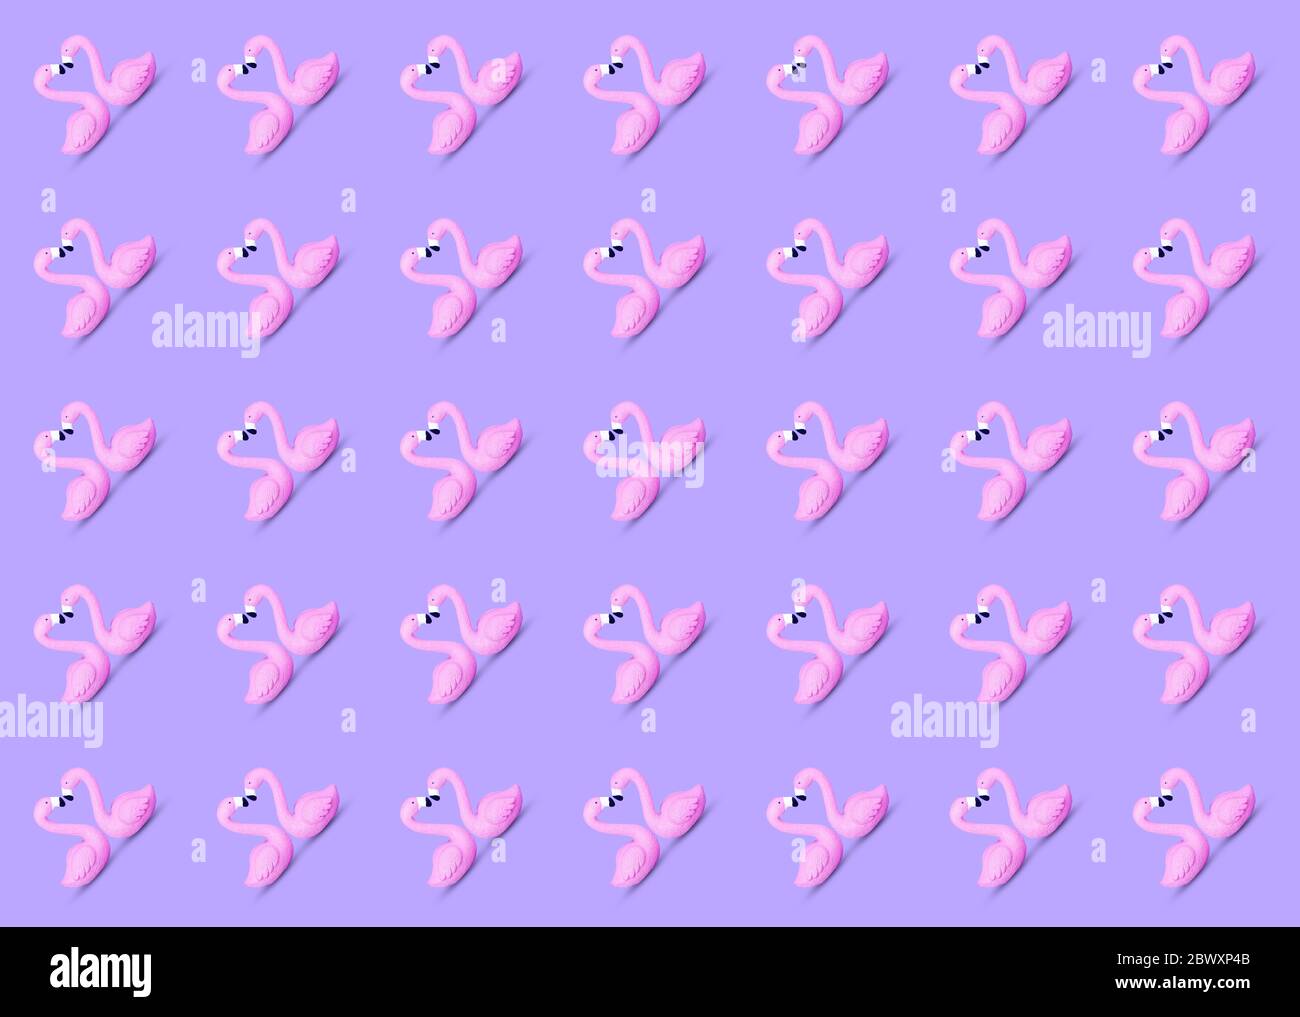 Trendy Sommer nahtlose Muster aus einem niedlichen rosa Spielzeug Flamingo Paar Schwimmen auf einem violetten Hintergrund gemacht. Beliebtes Vogelsymbol des Sommers. Entspannend und c Stockfoto